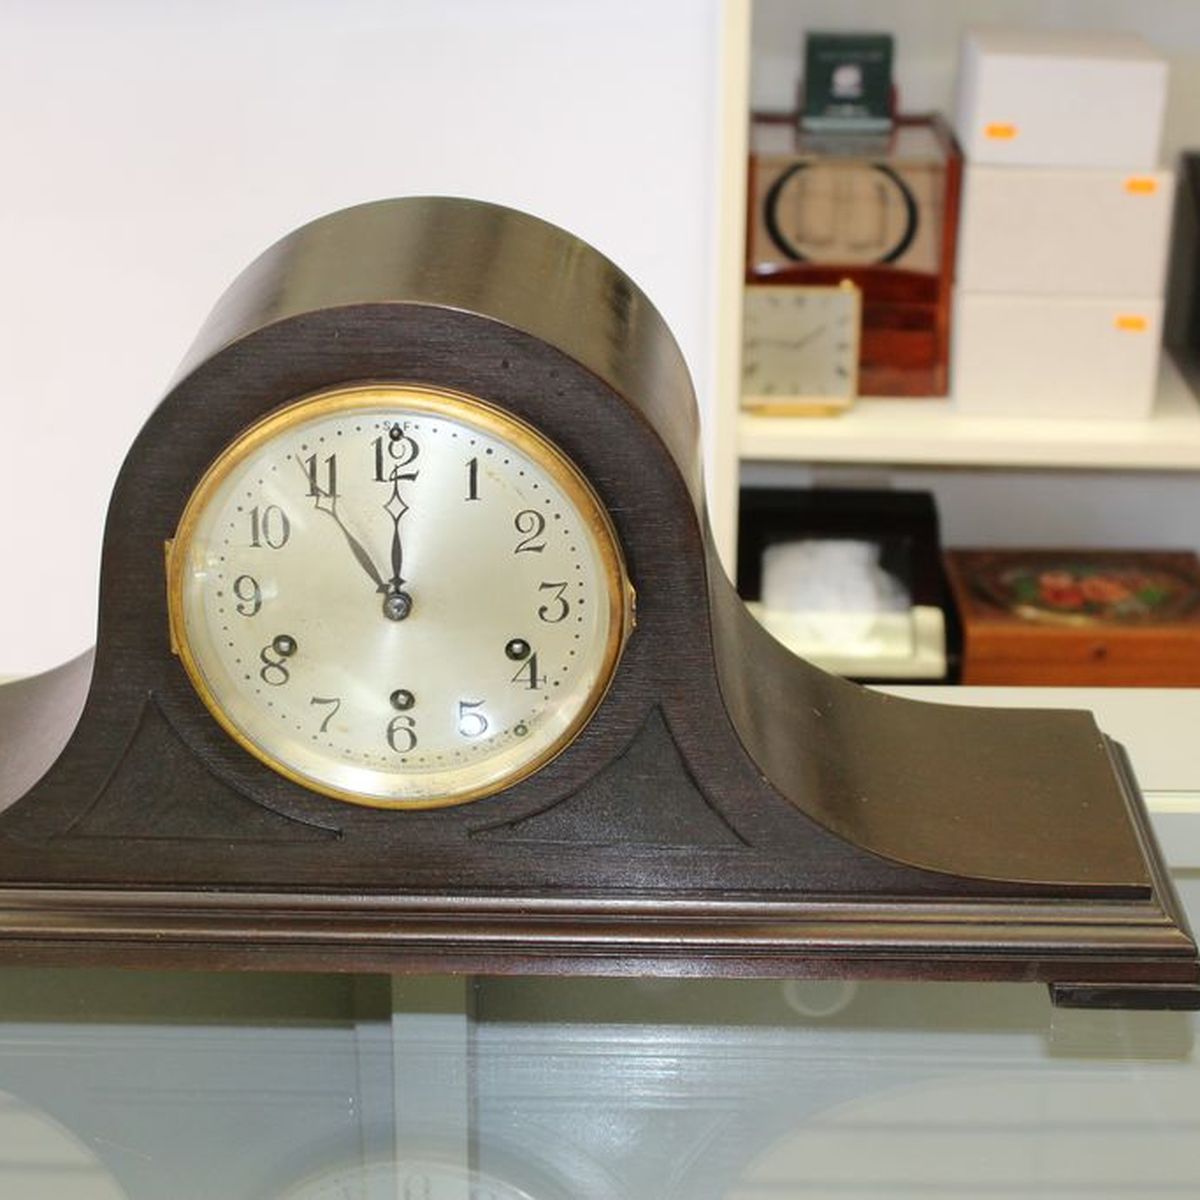 Choosing Between a Sligh Clock and a Hermle Clock